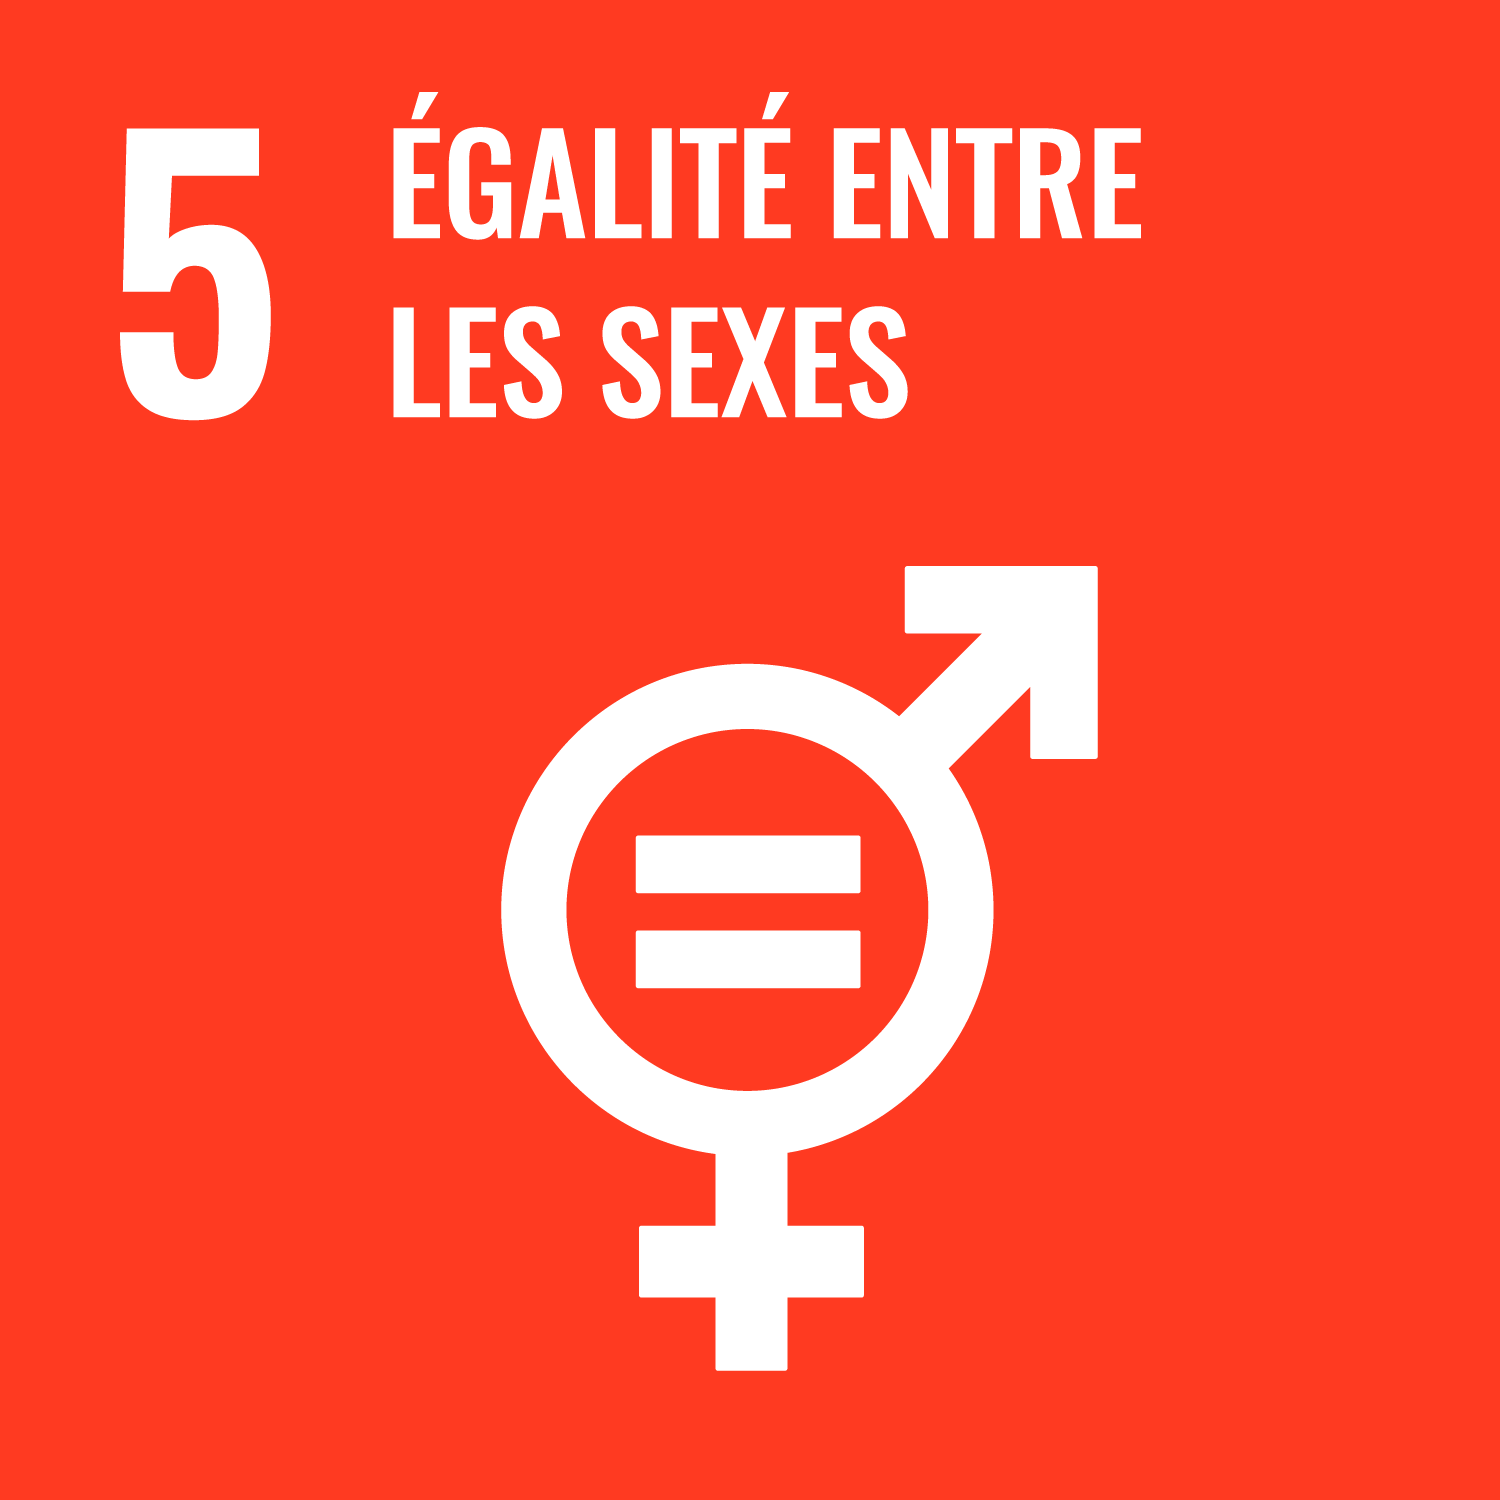 Objectif de Développement Durable : égalité des sexes